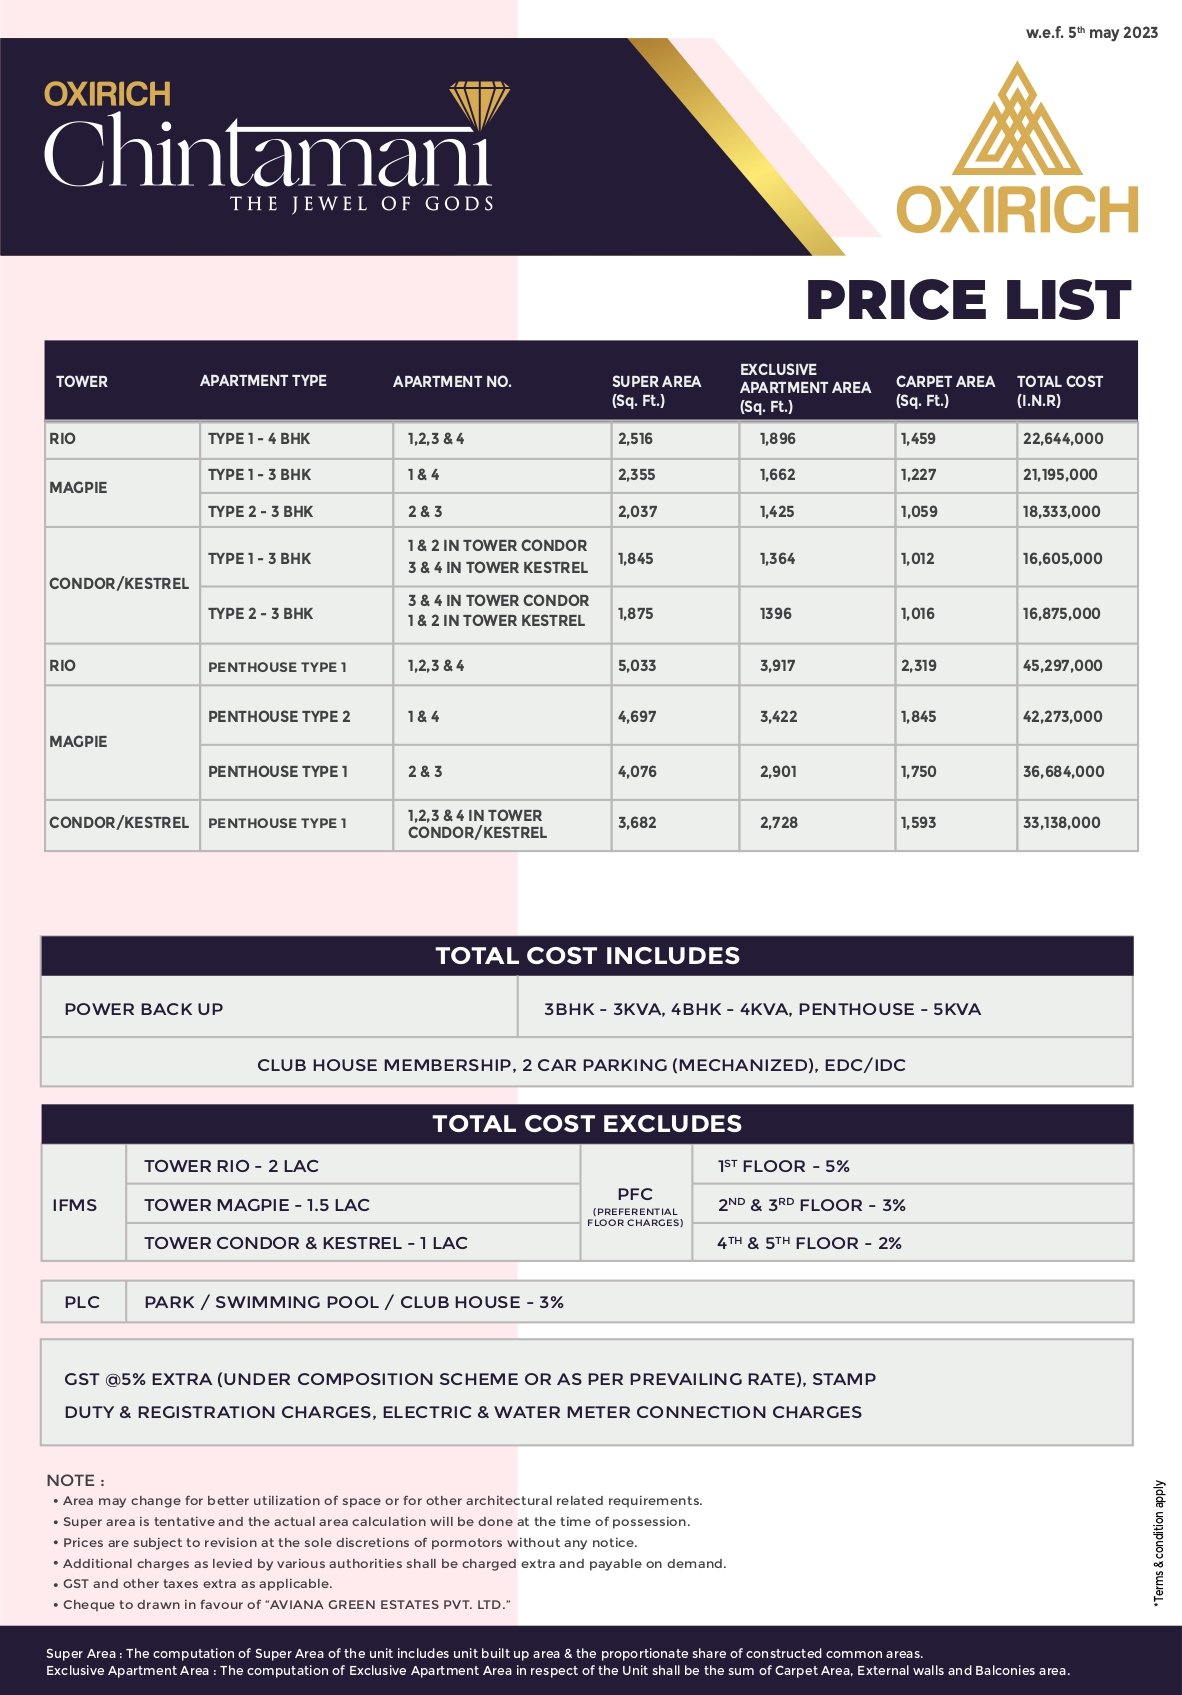 Oxirich Chintamanis Price List